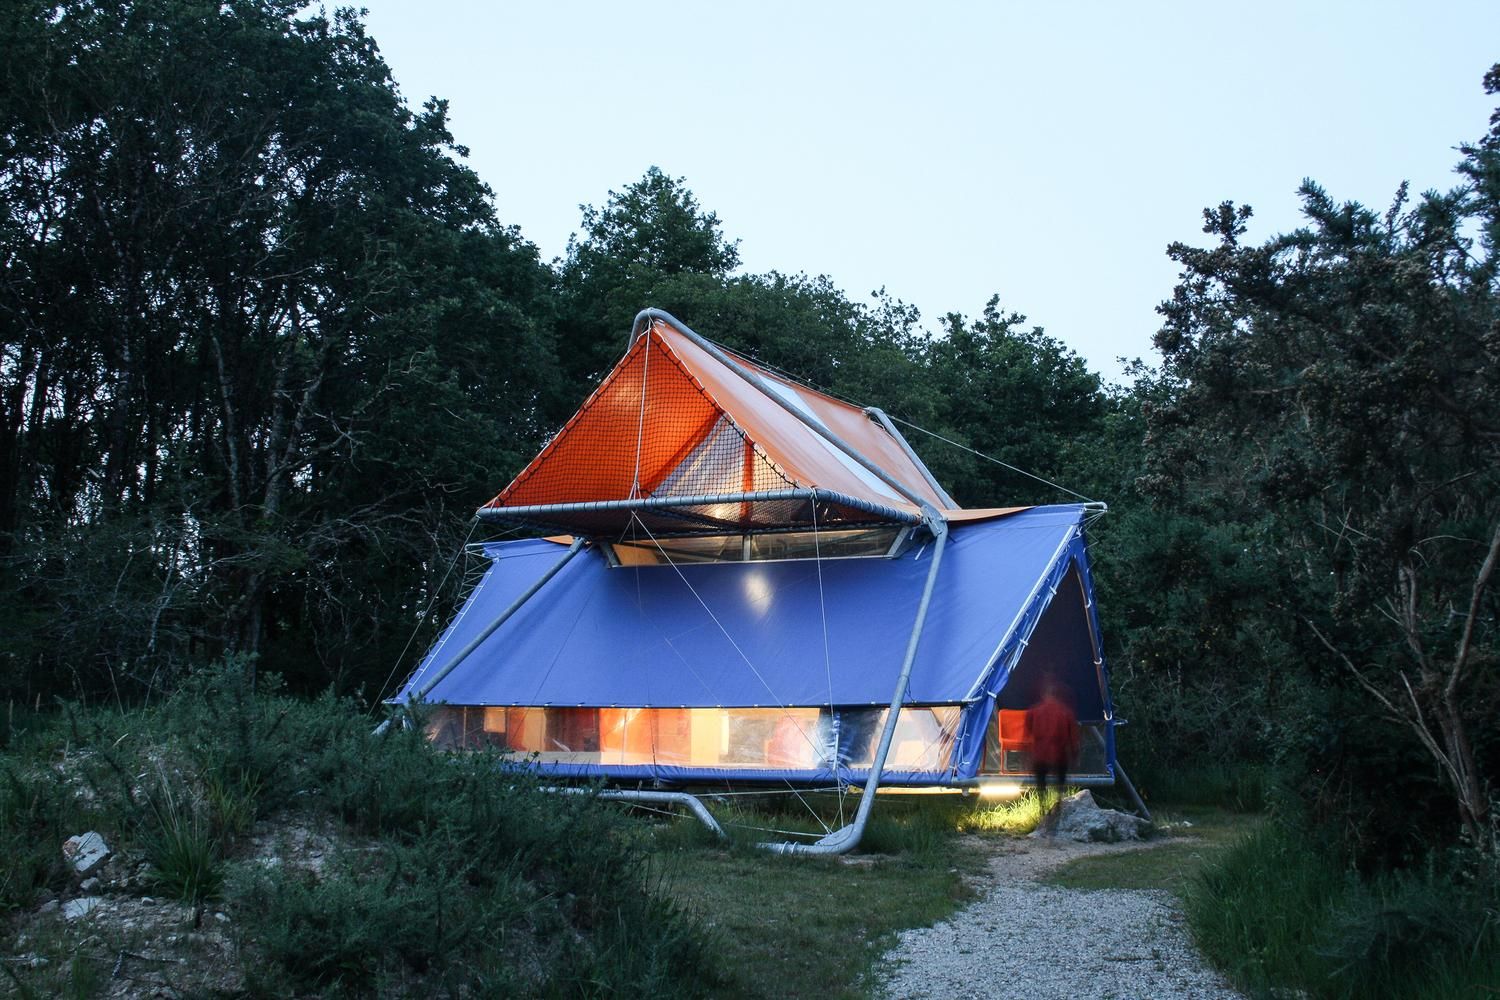 Всю жизнь в походе: во Франции пара оборудовала двухэтажный дом из палаток – фото